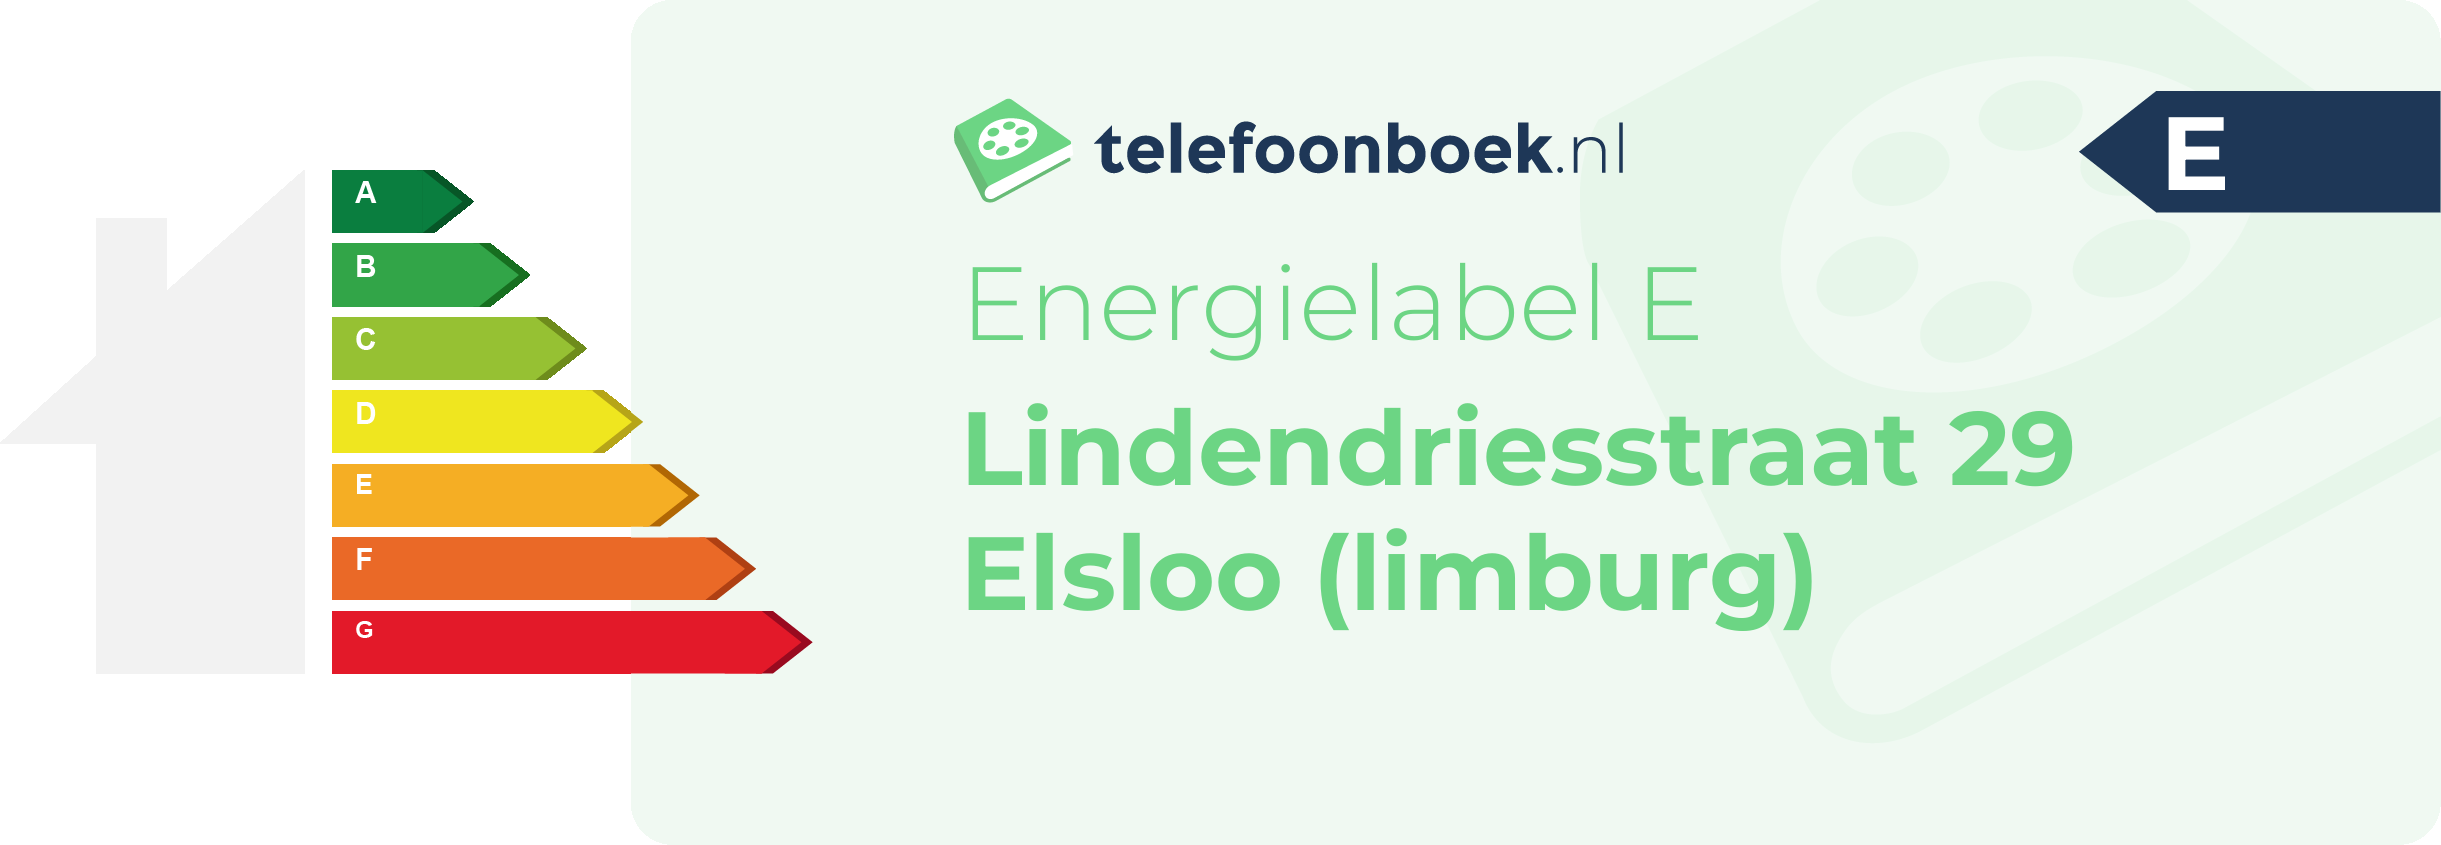 Energielabel Lindendriesstraat 29 Elsloo (Limburg)